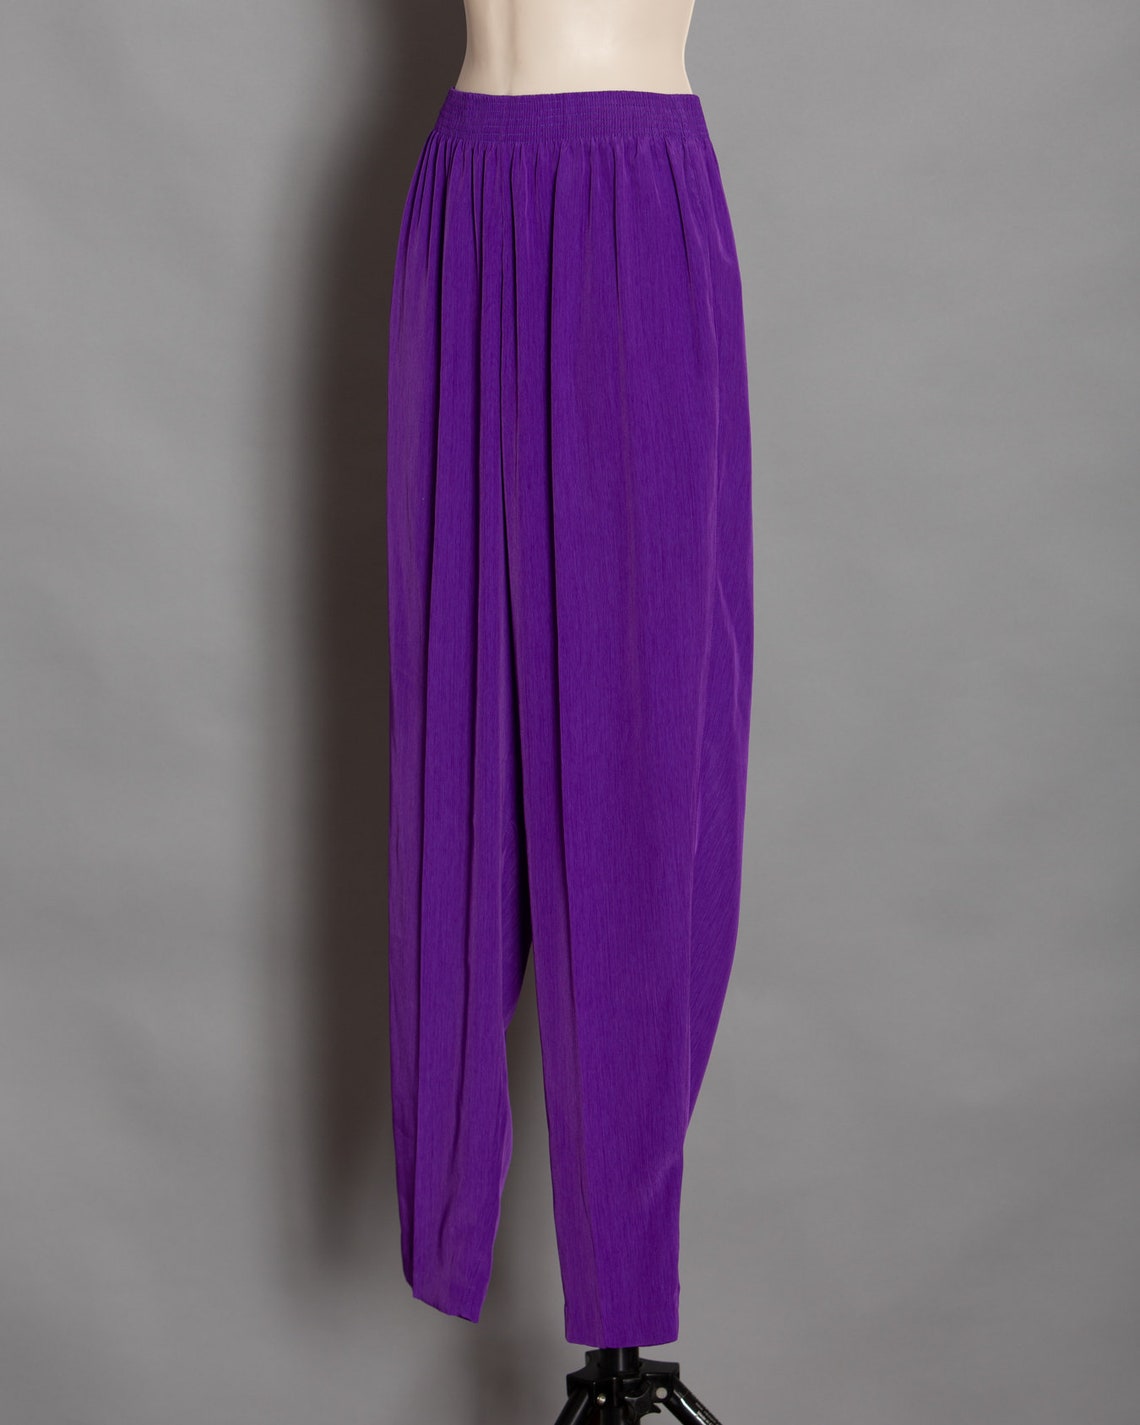 80s 90s Women's Light-weight Flowy Purple Pants PETER | Etsy